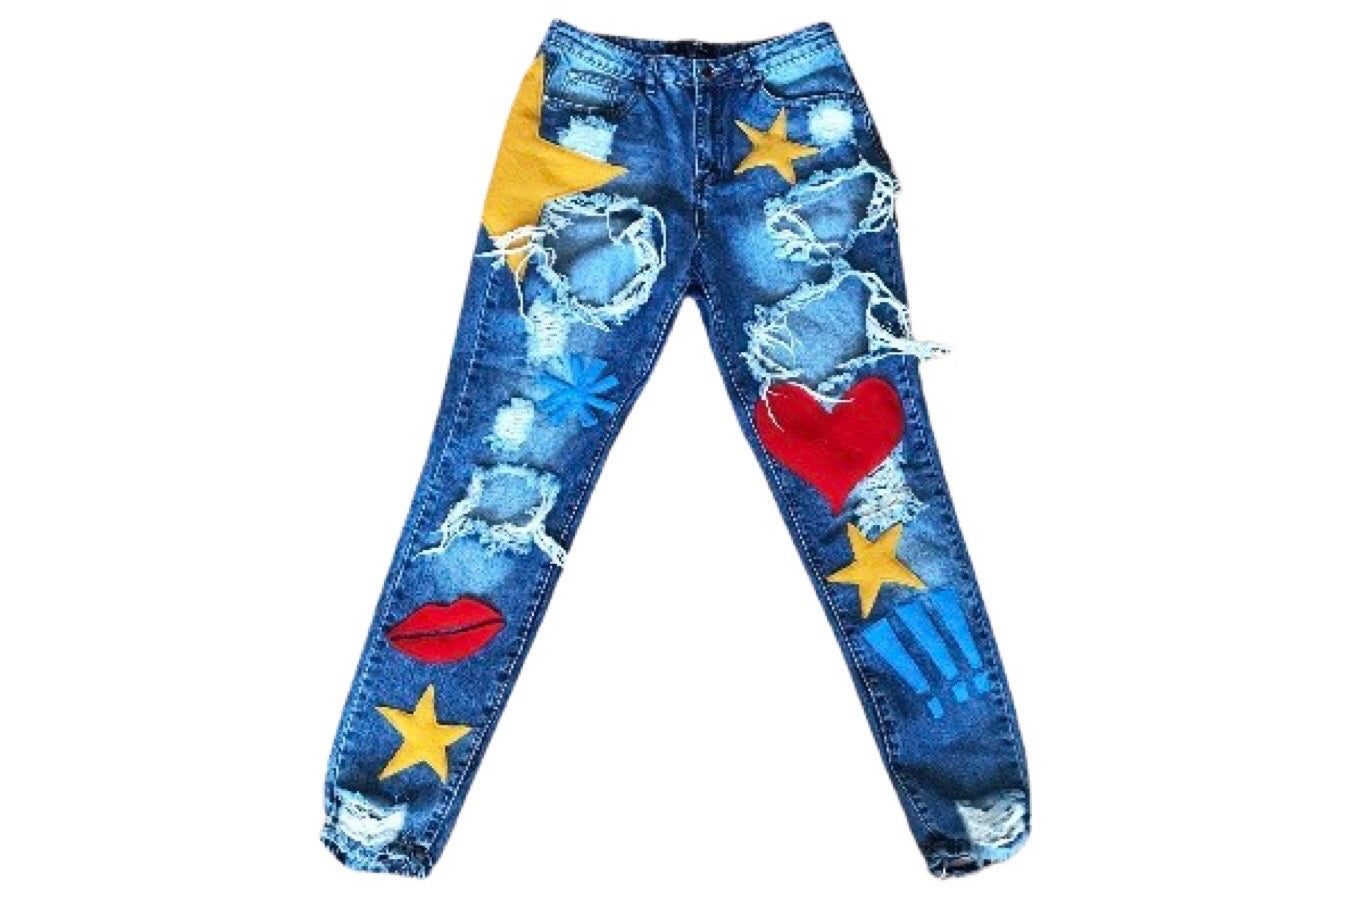 Sm. Reworked Appliqued Destroyed Blue Jeans